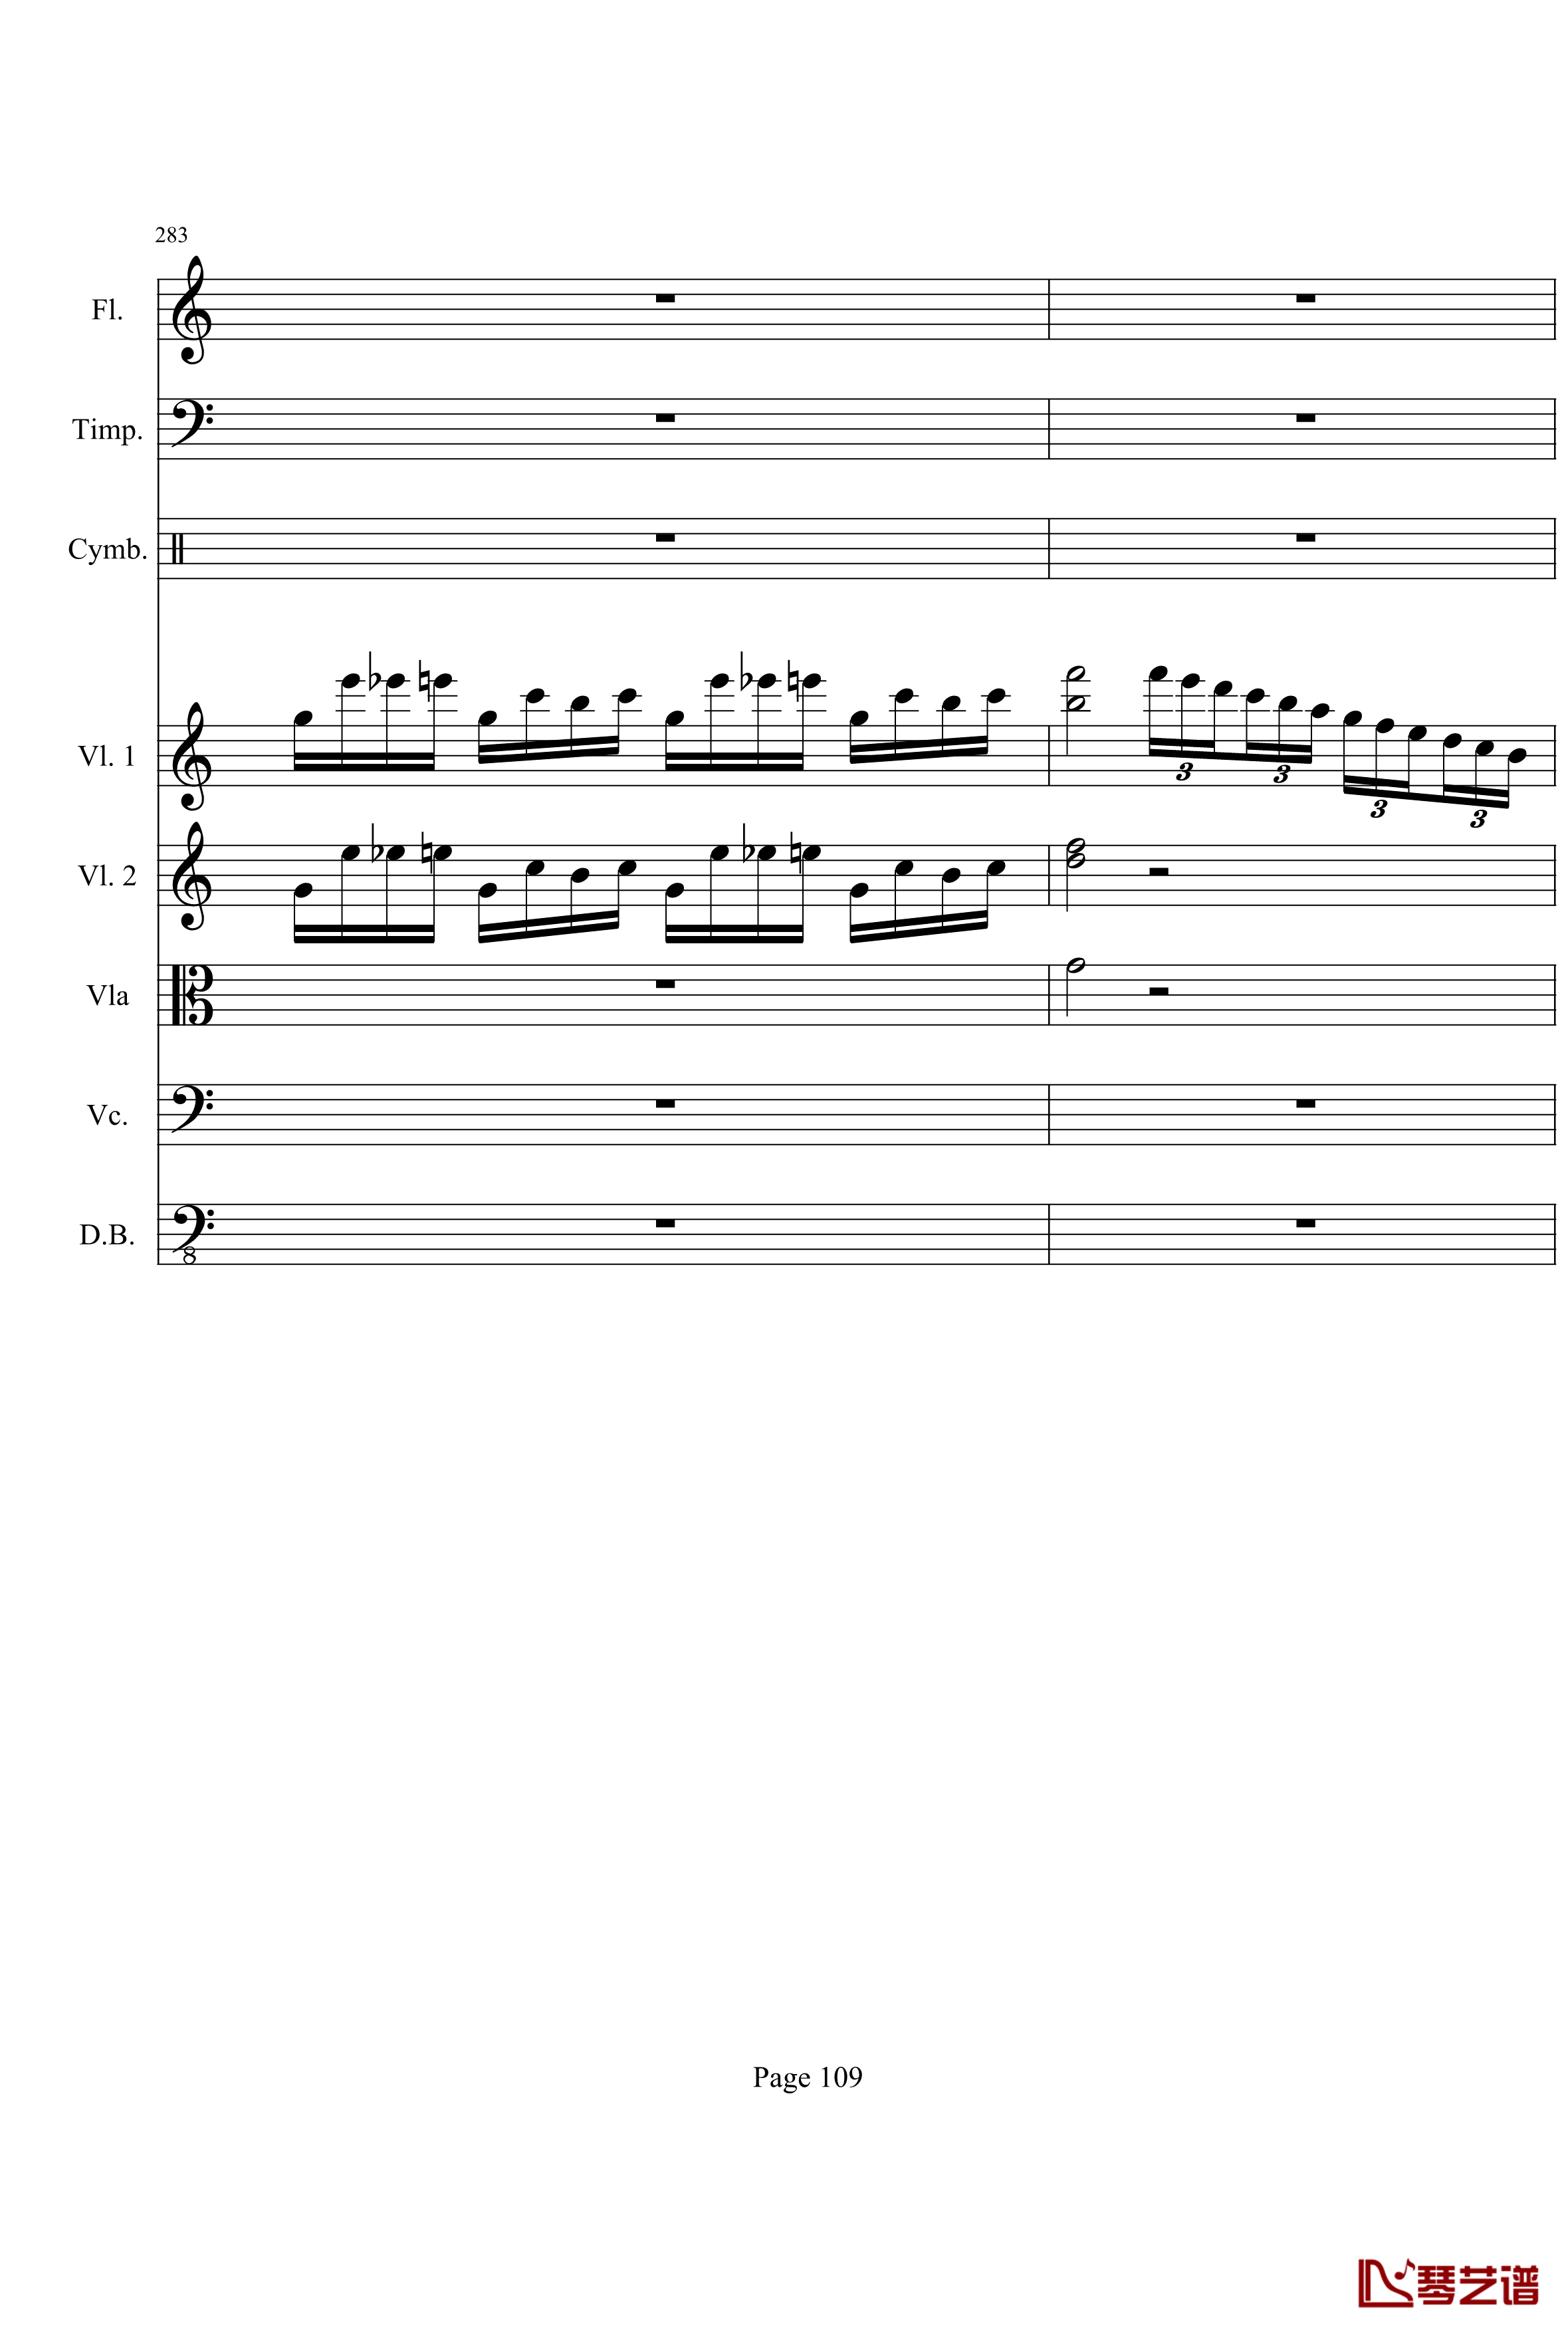 奏鸣曲之交响钢琴谱-第21-Ⅰ-贝多芬-beethoven109